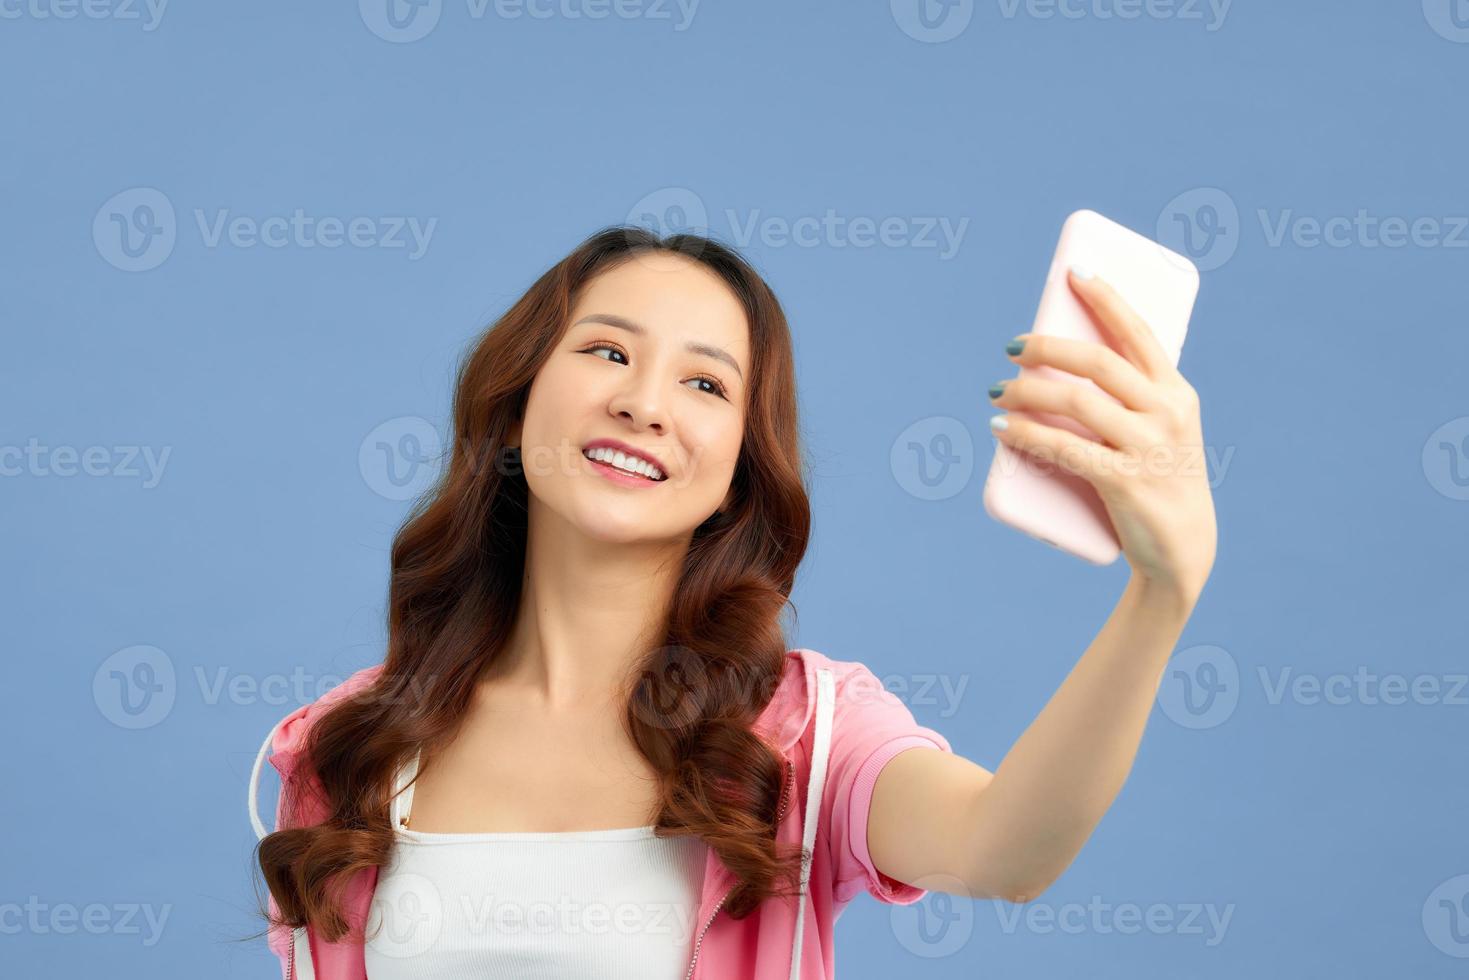 retrato de una chica alegre y fresca que tiene una videollamada con un amante sosteniendo un teléfono inteligente en la mano, disparando selfie en la cámara frontal aislada en un fondo azul. foto